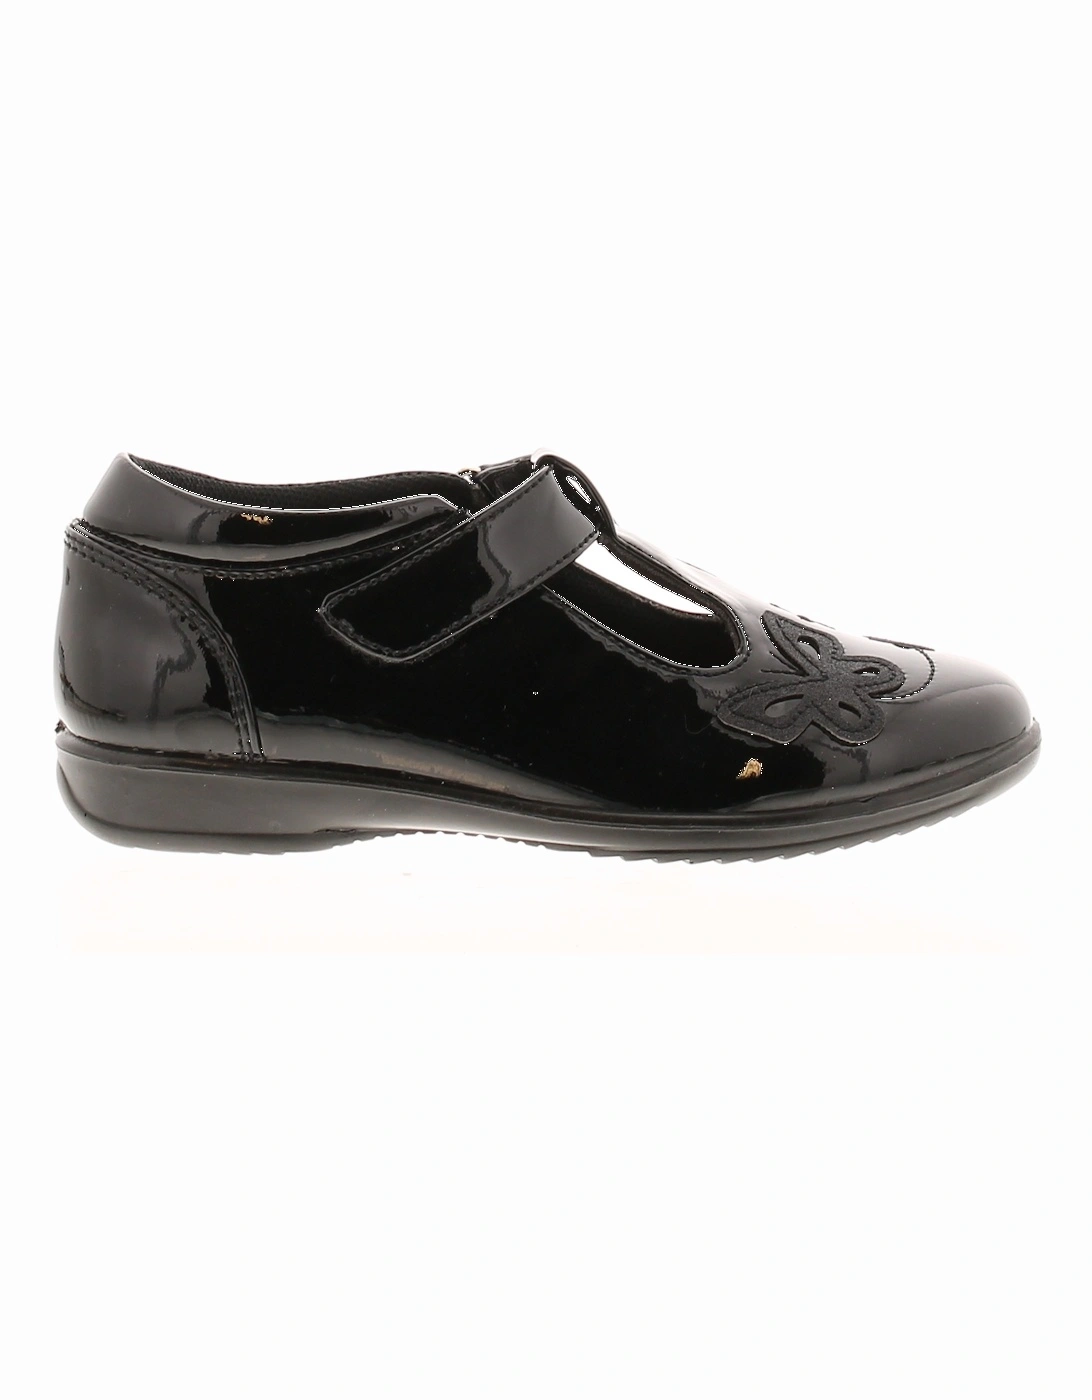 Girls Shoes School Infants Esme black UK Size